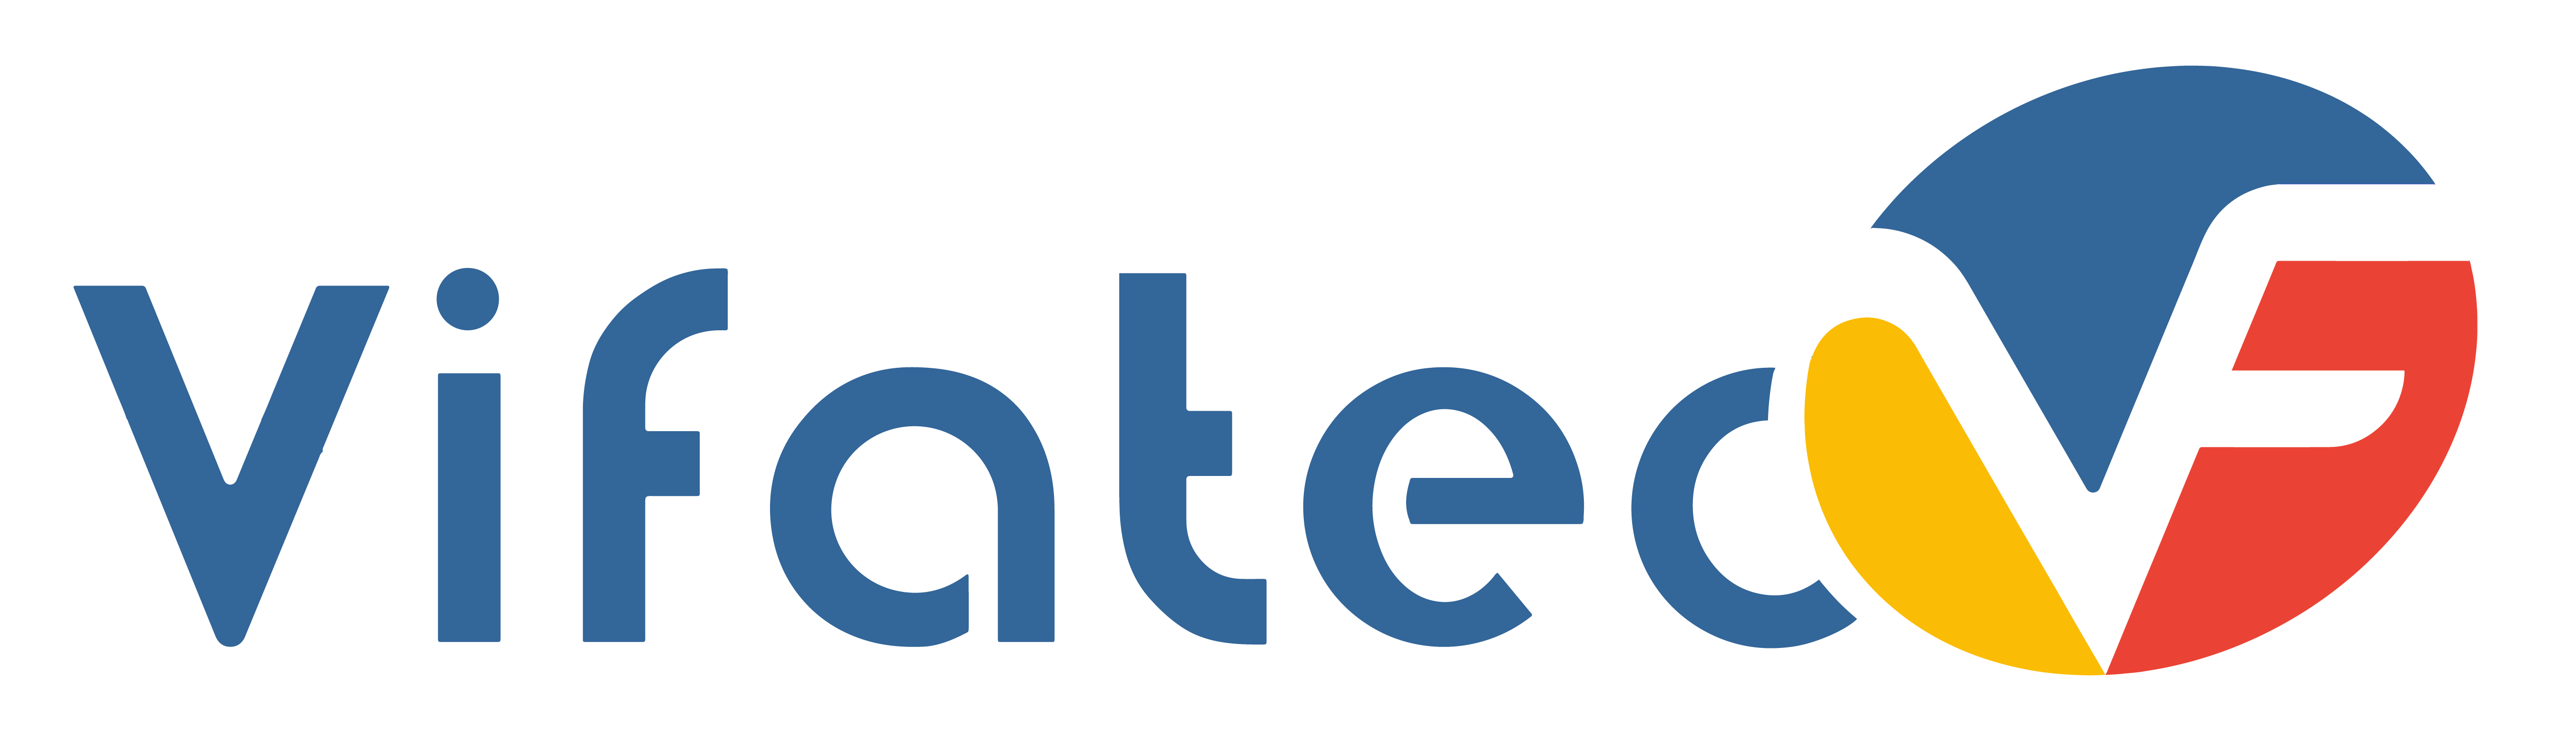  				Công ty cổ phần VIFATEC Quốc tế				